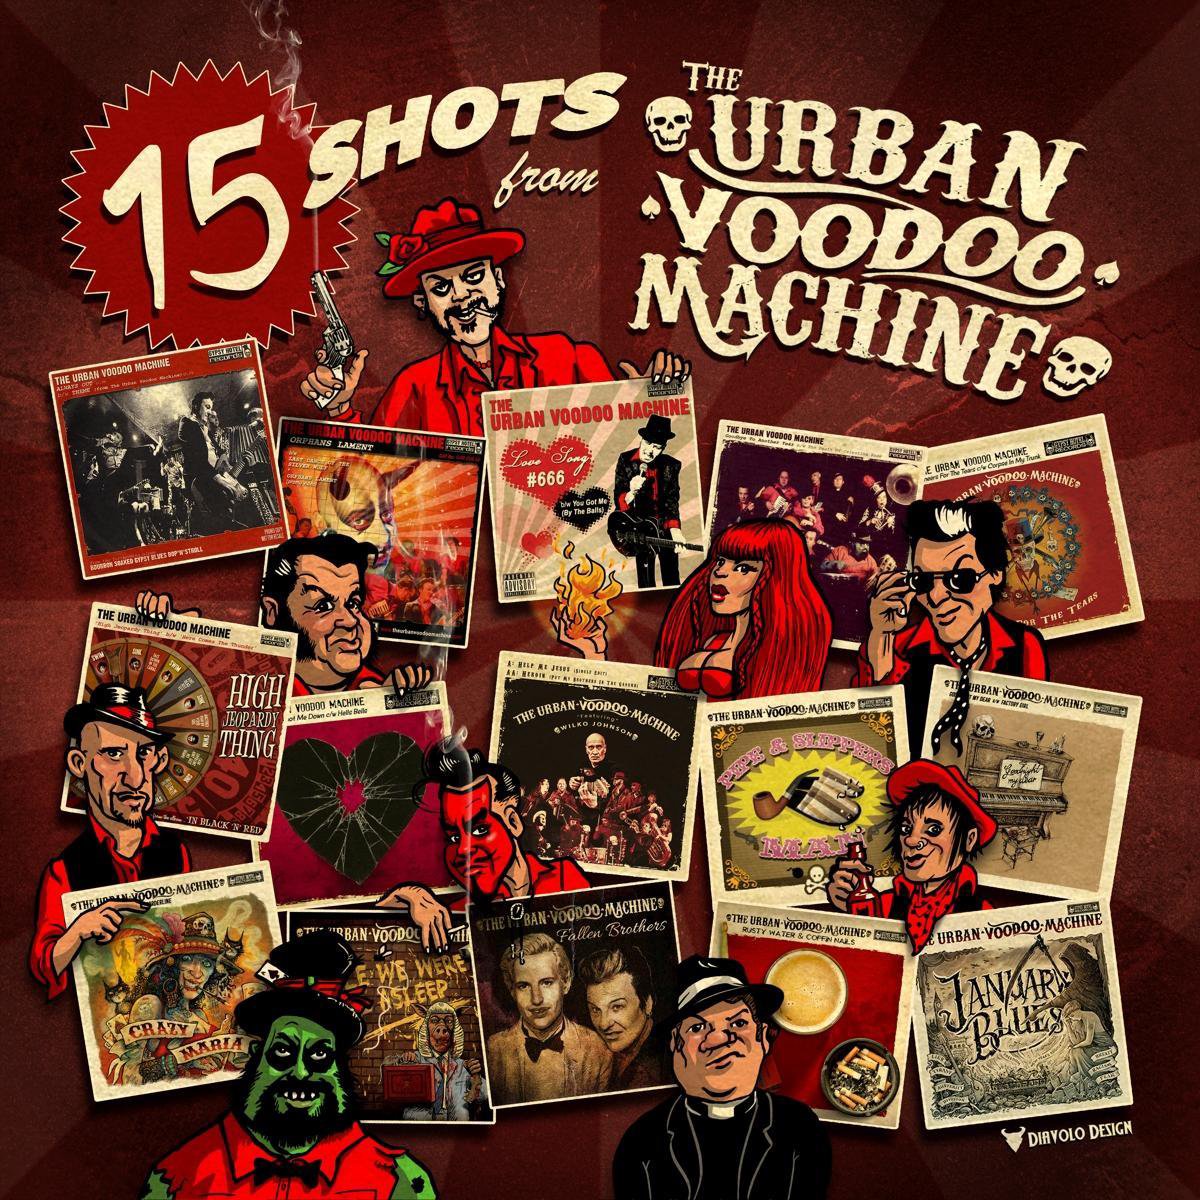 15 Shots From The Urban Voodoo Machine - The Urban Voodoo Machine